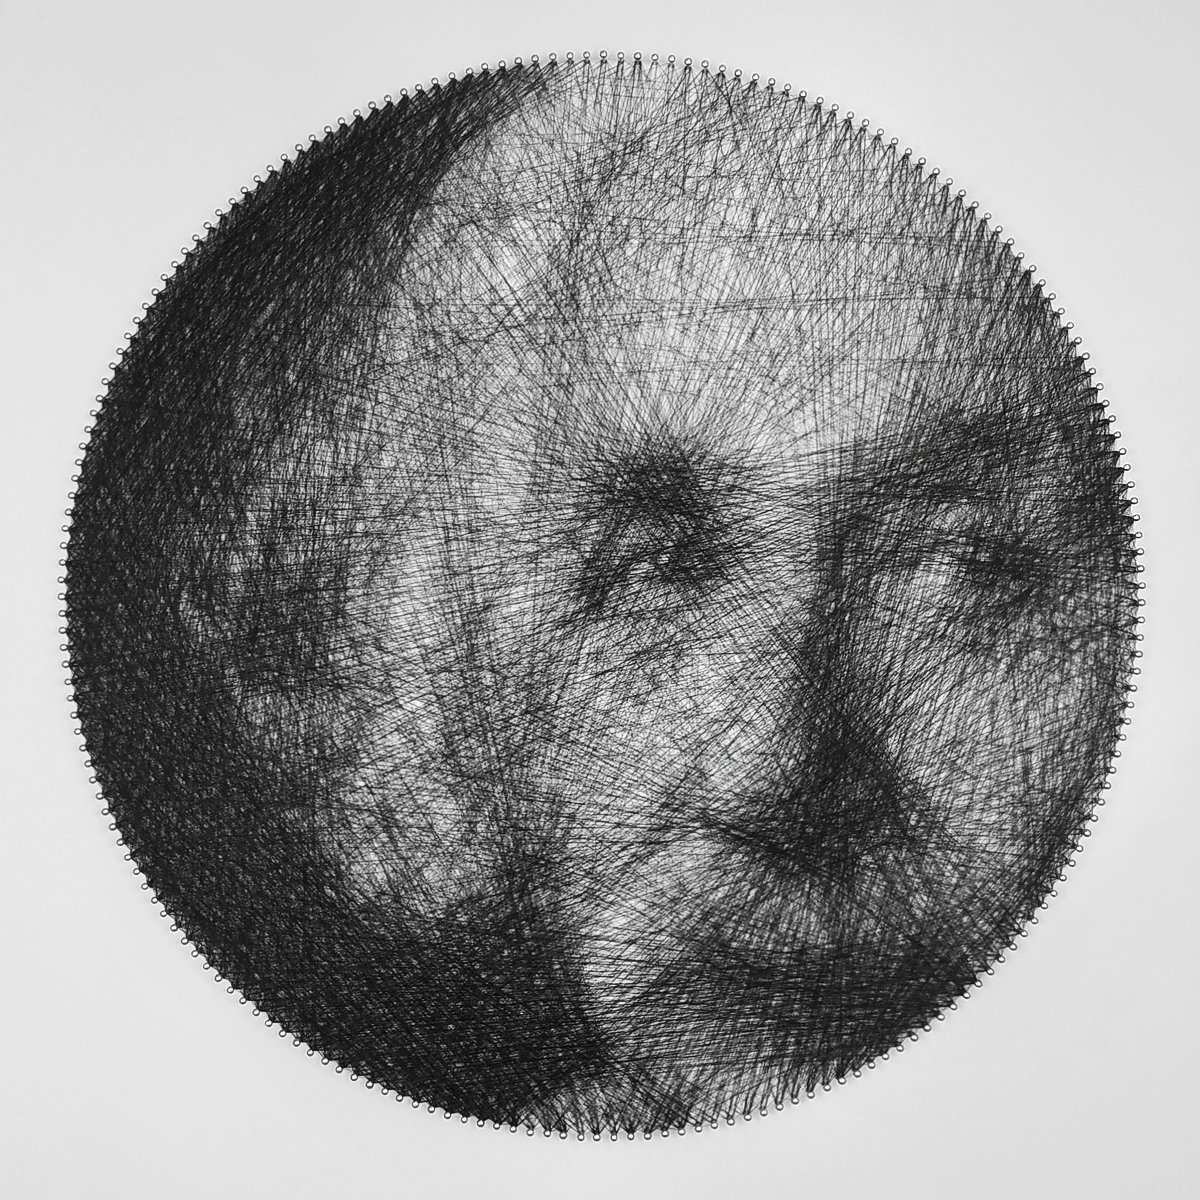 Albert Einstein string art portrait